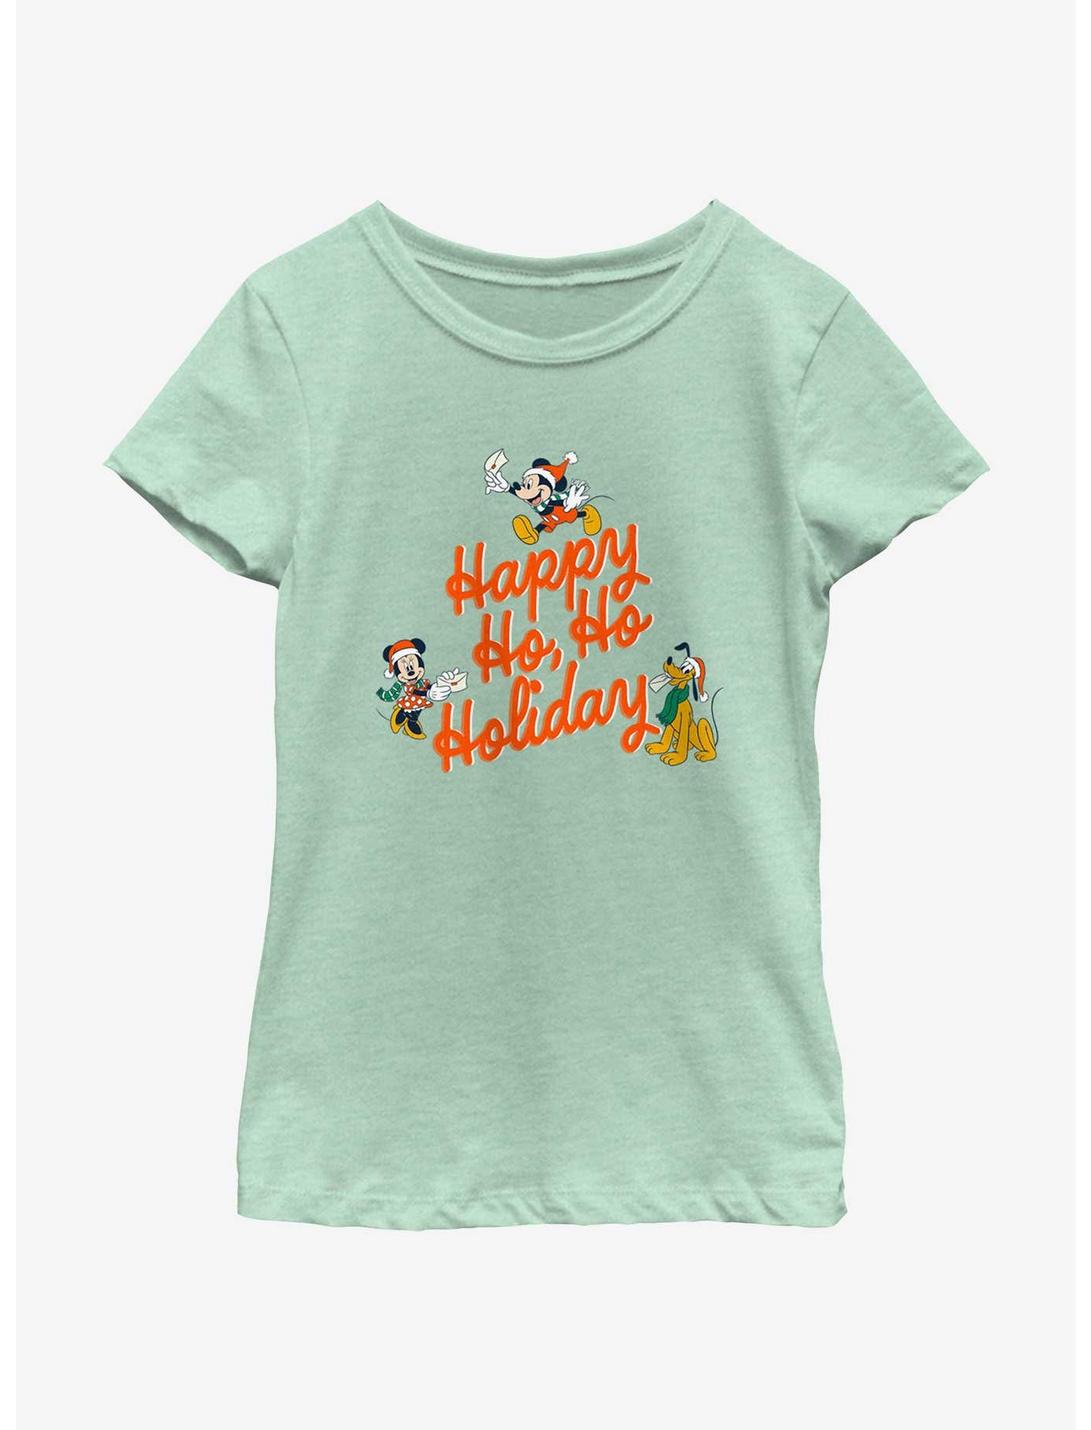 Disney Mickey Mouse Happy Ho Ho Holiday Youth Girls T-Shirt, MINT, hi-res